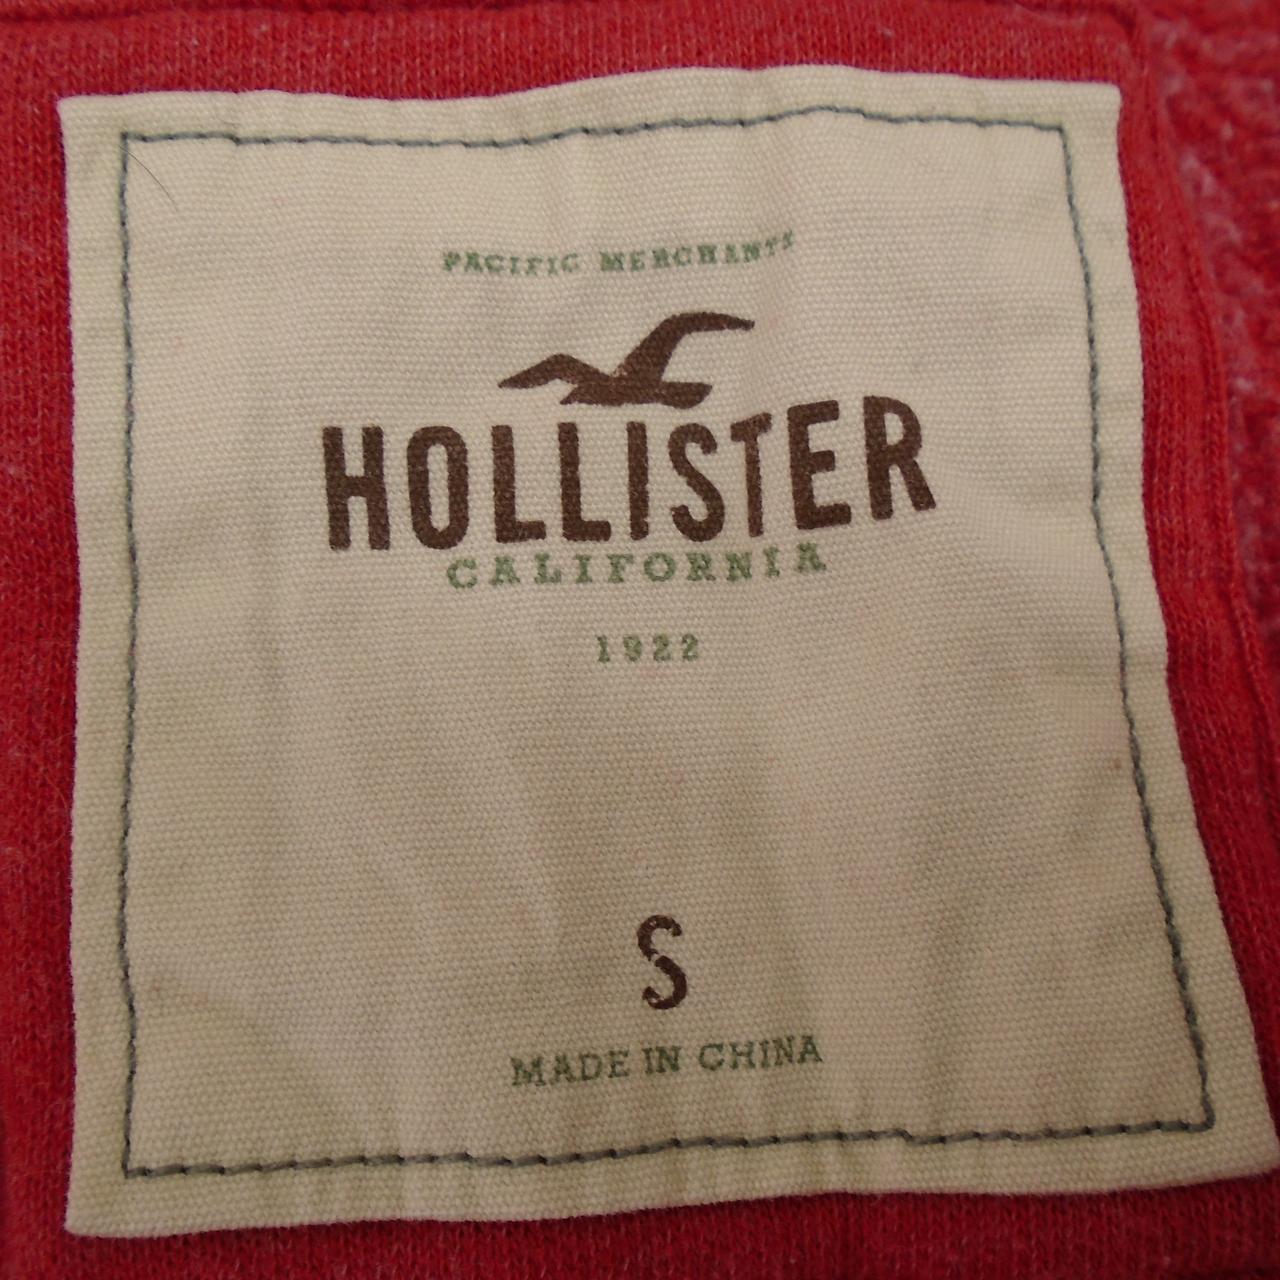 Damen-Kapuzenpullover von Hollister. Rot. XS. Gebraucht. Gut